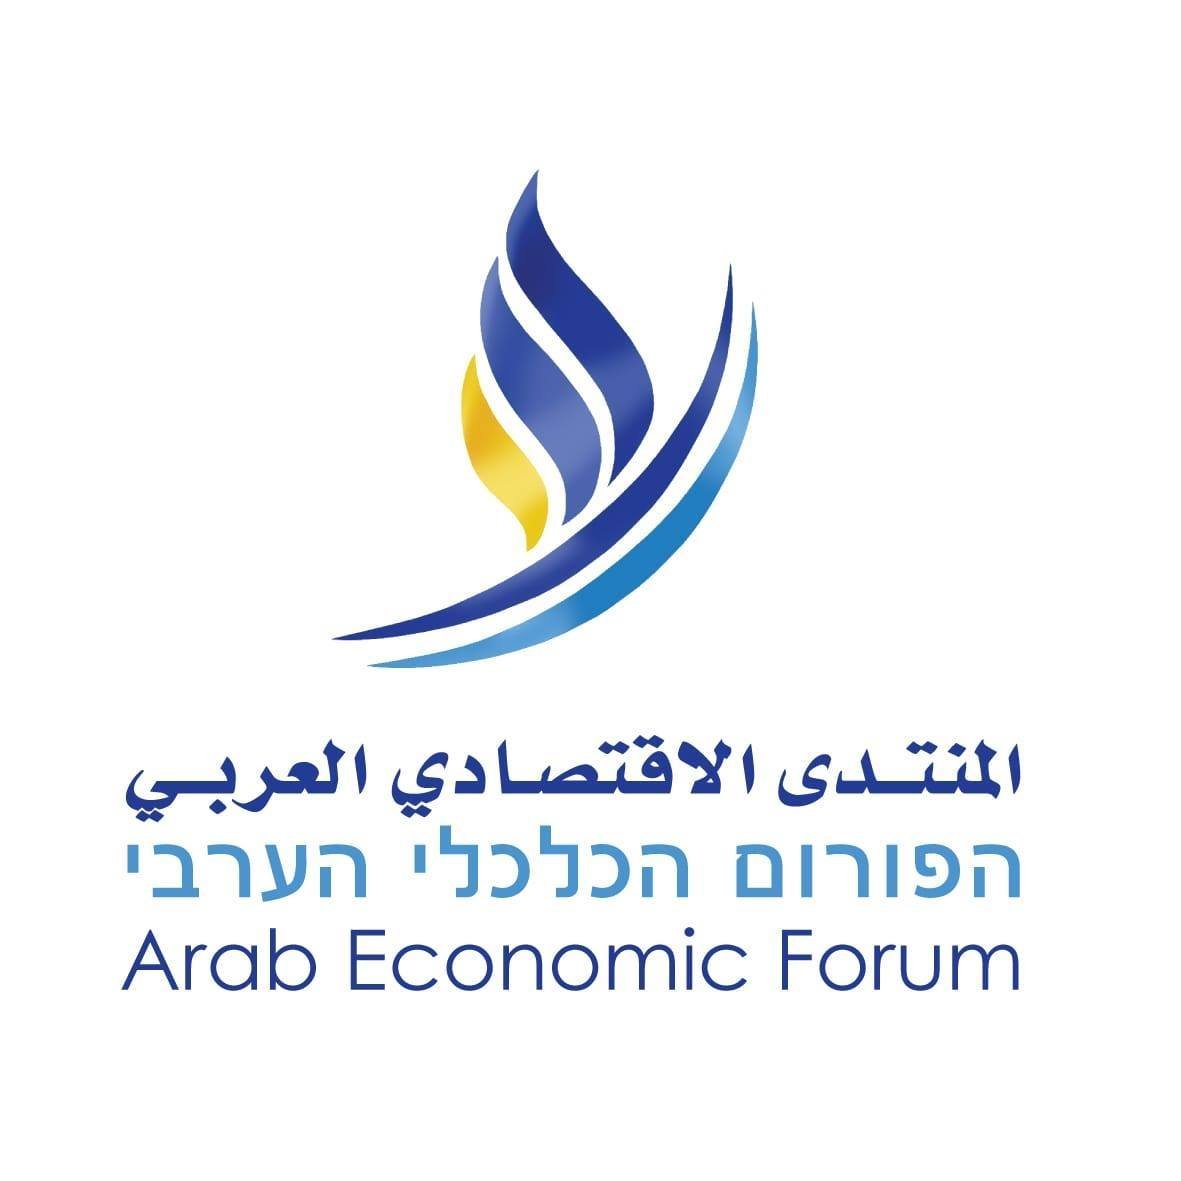 المنتدى الاقتصادي العربي يكشف معطيات خطيرة حول تشغيل العرب في الأشهر الاخيرة-0